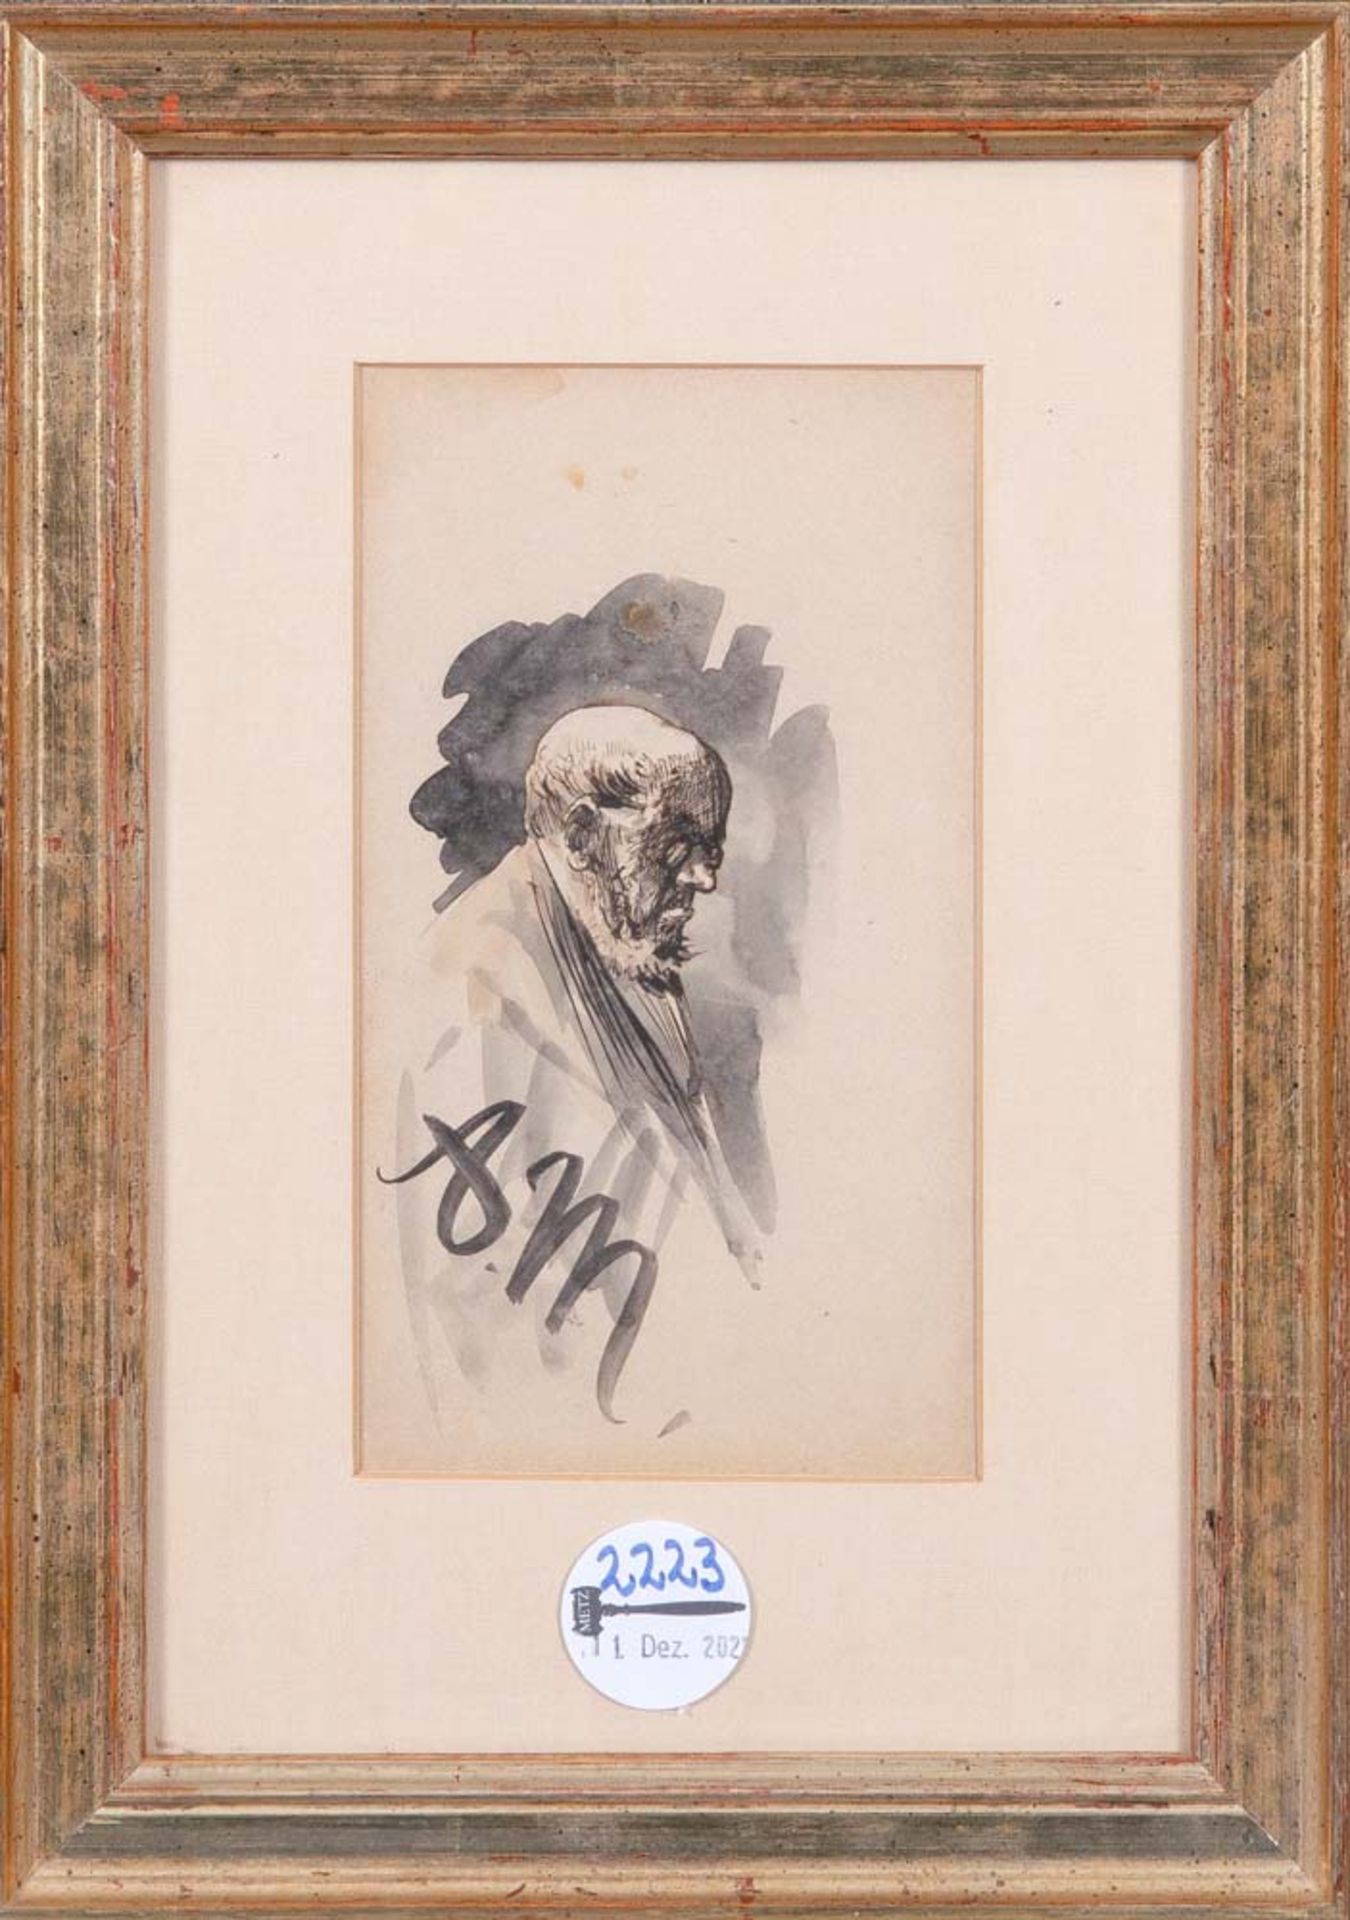 Adolph von Menzel (1815-1905) attrib. Herrenporträt, verso Studie mit Landschaft, Figuren und